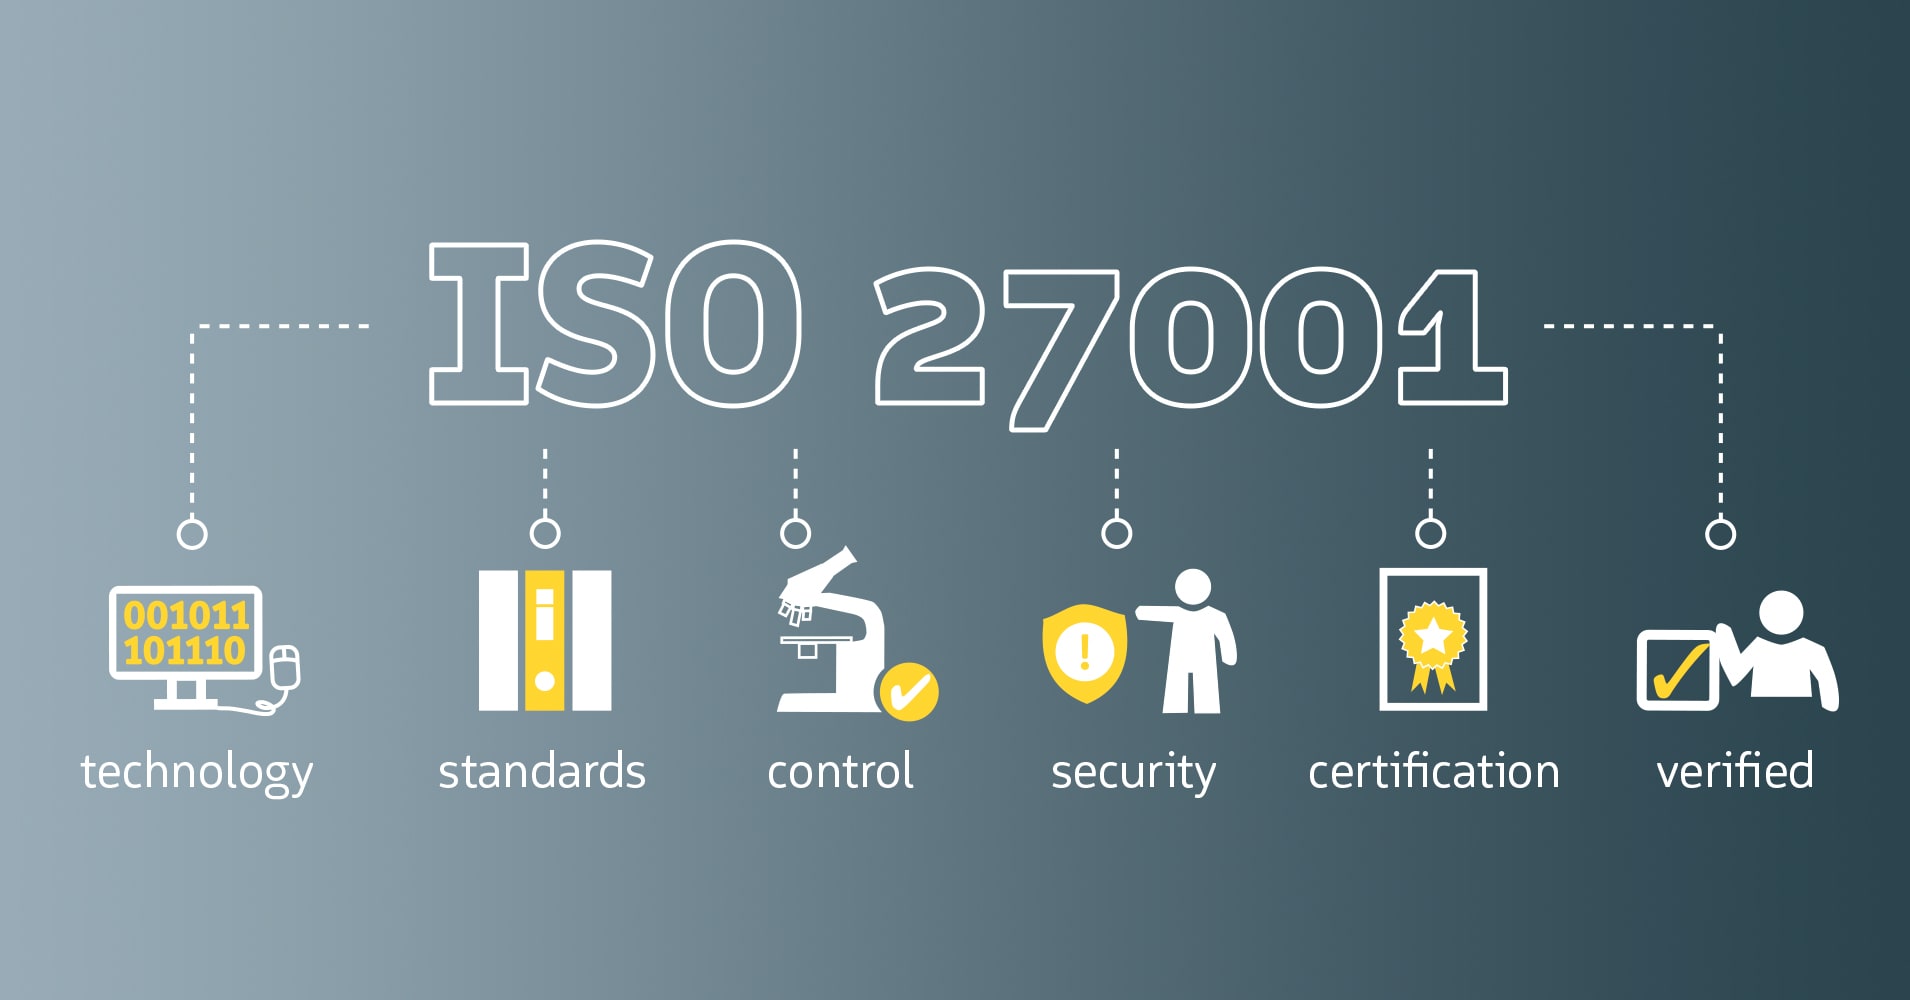 SKIDATA dispone de certificación ISO 27001 